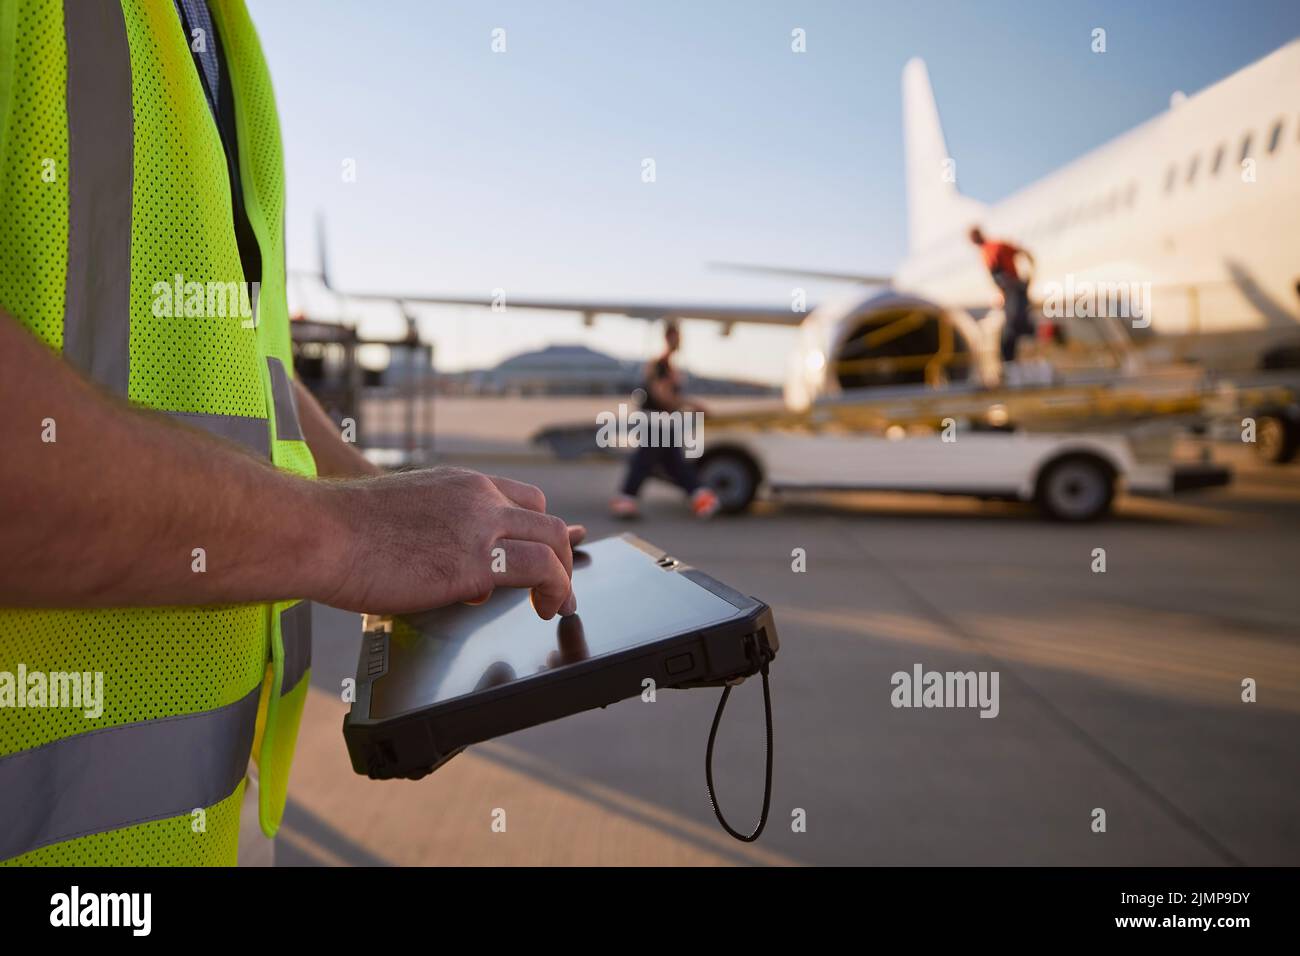 Mitglied der Bodenbesatzung, die das Flugzeug vor dem Flug vorbereitet. Arbeiter, die am Flughafen ein Tablet gegen das Flugzeug benutzen. Stockfoto